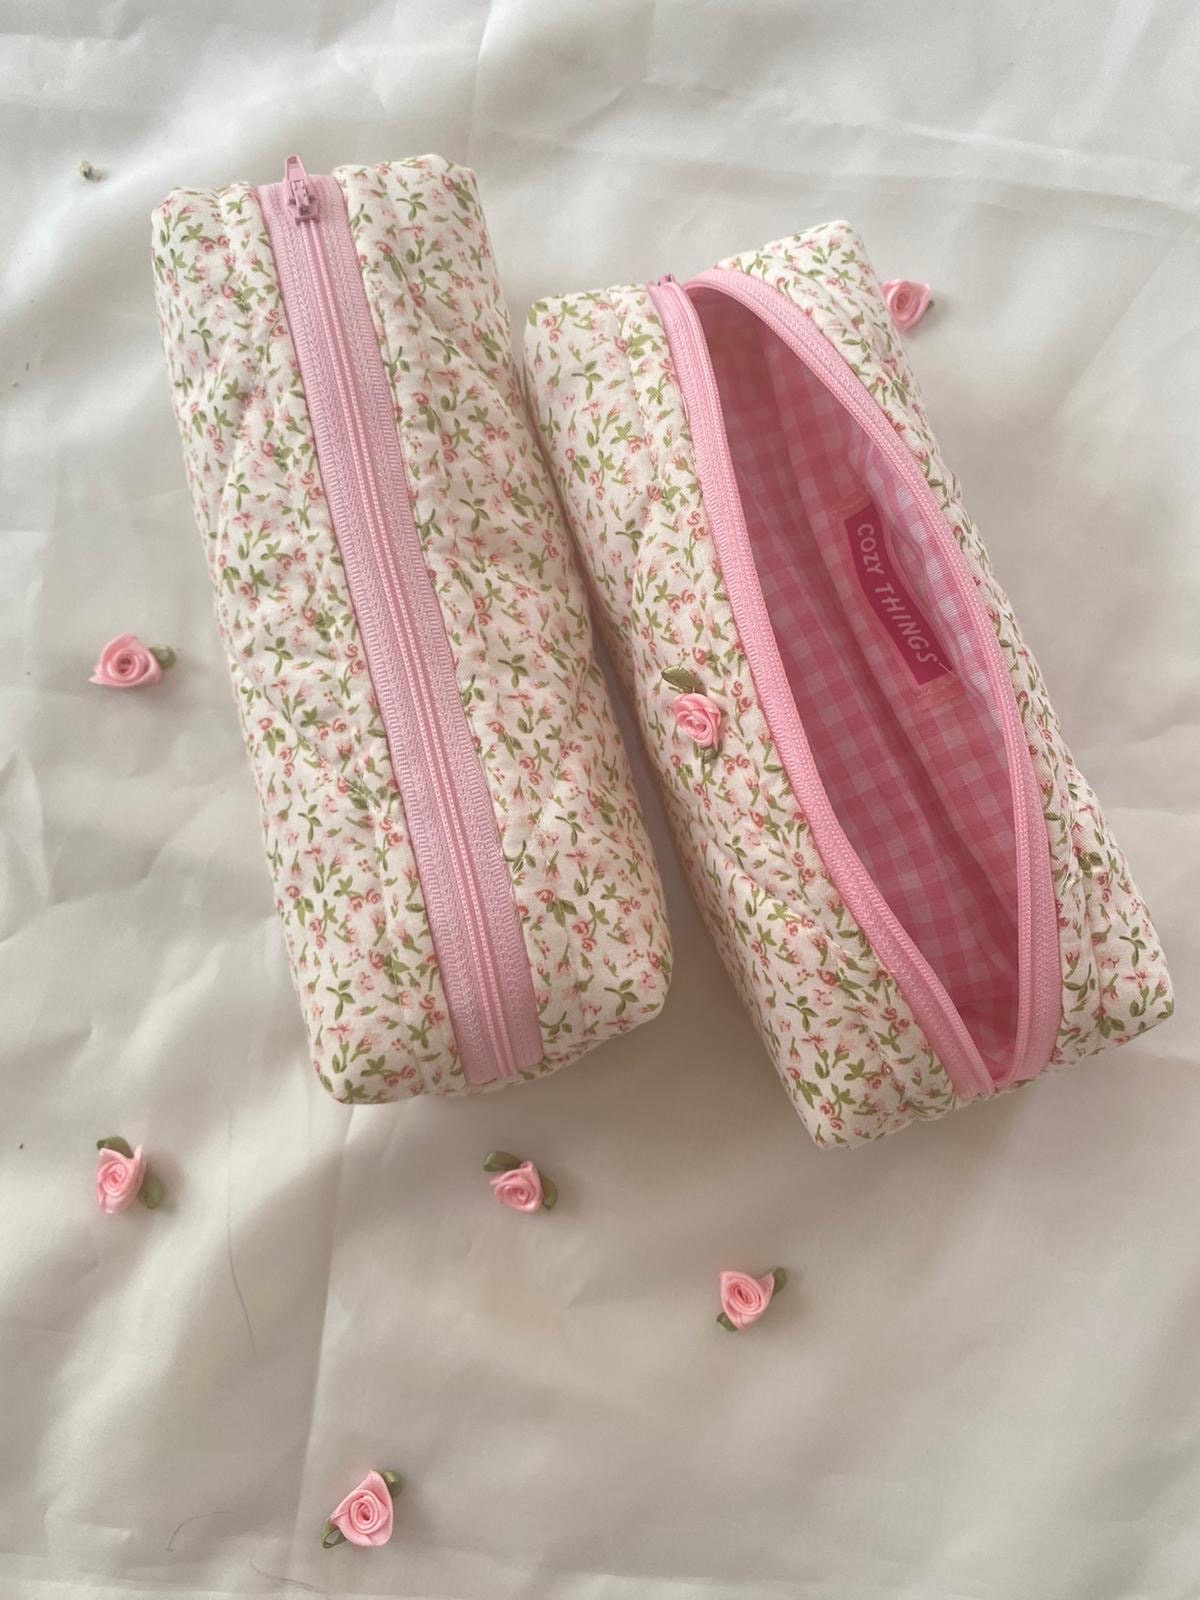 1 Pcs Fashion Mini Retro Flower Floral Lace Pencil Shape Pen Bag Make Up  Bag Zipper Pouch Purse